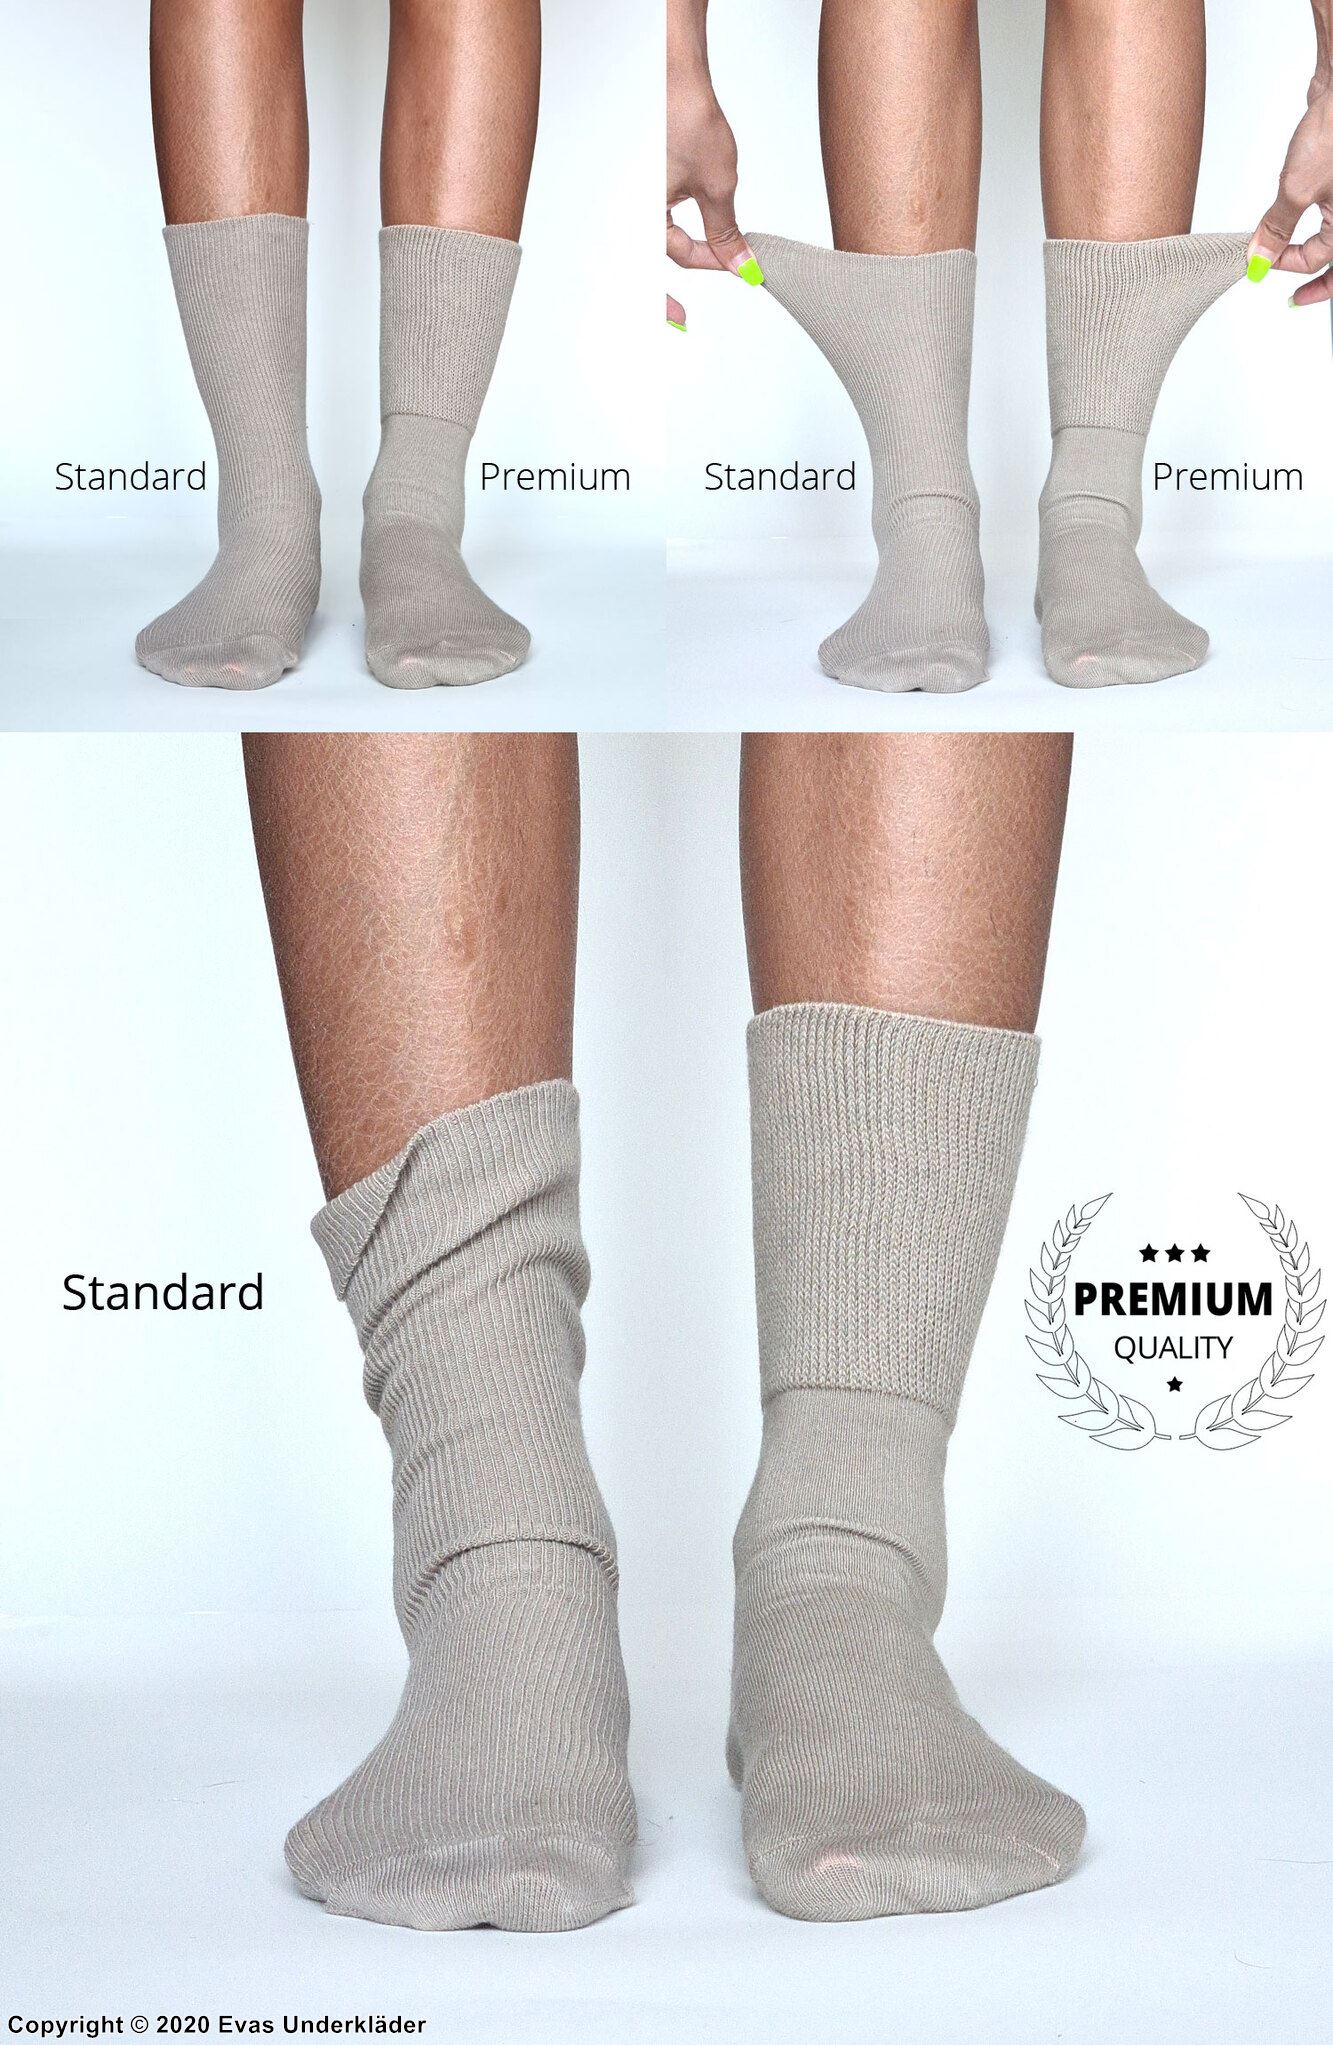 Warm comfort socks (unisex), Italian lamb's wool, non-restrictive cuffs, flat seam, 3-pack